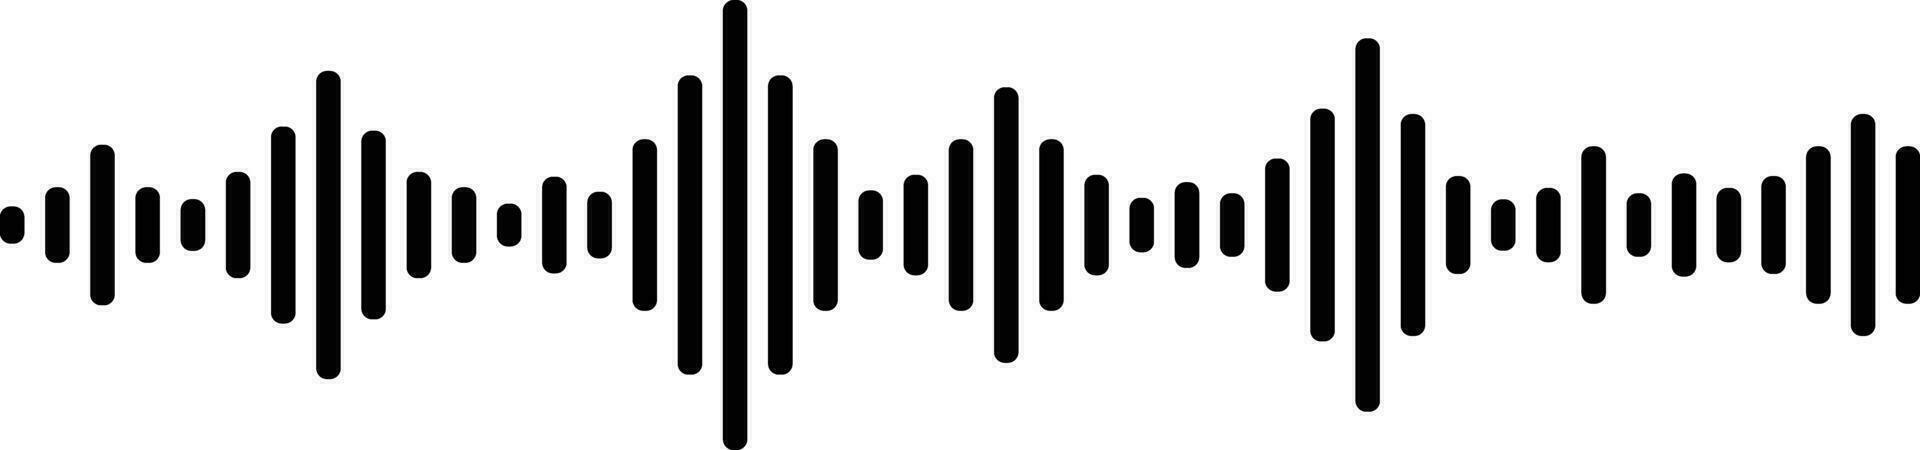 som e audio ondas. monocromático som onda linhas. som ondas ritmo símbolo. volume audio balanças linhas. vibração e pulsante linhas. analógico e digital audio sinal. música equalizador vetor